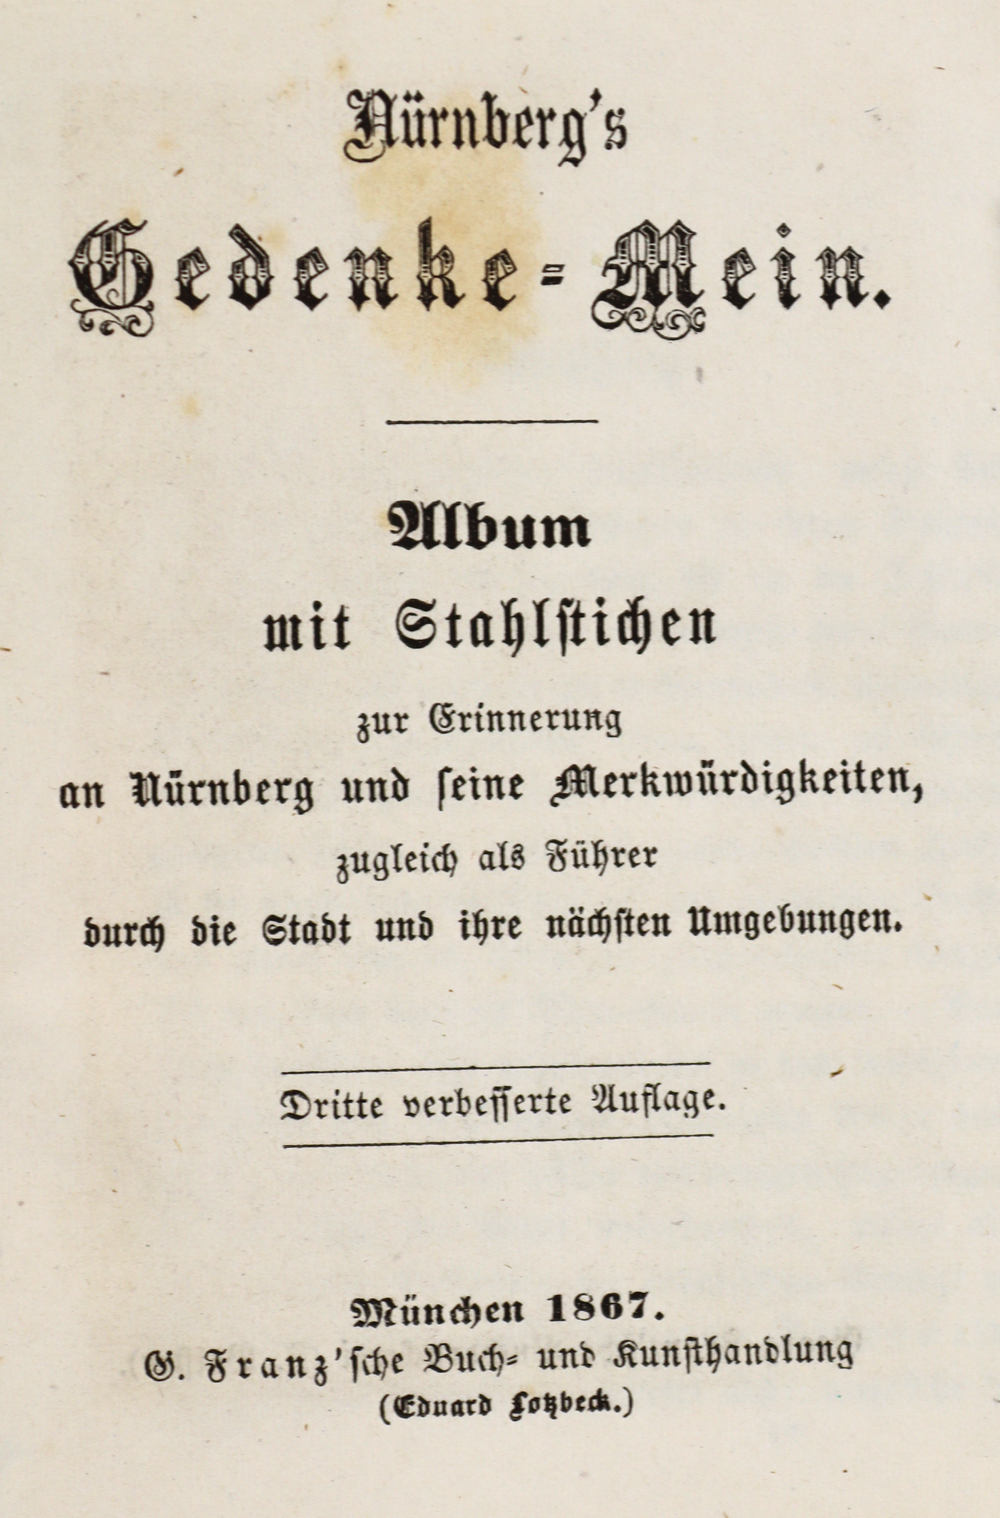 Nürnberg's Gedenke-Mein. - Image 2 of 2